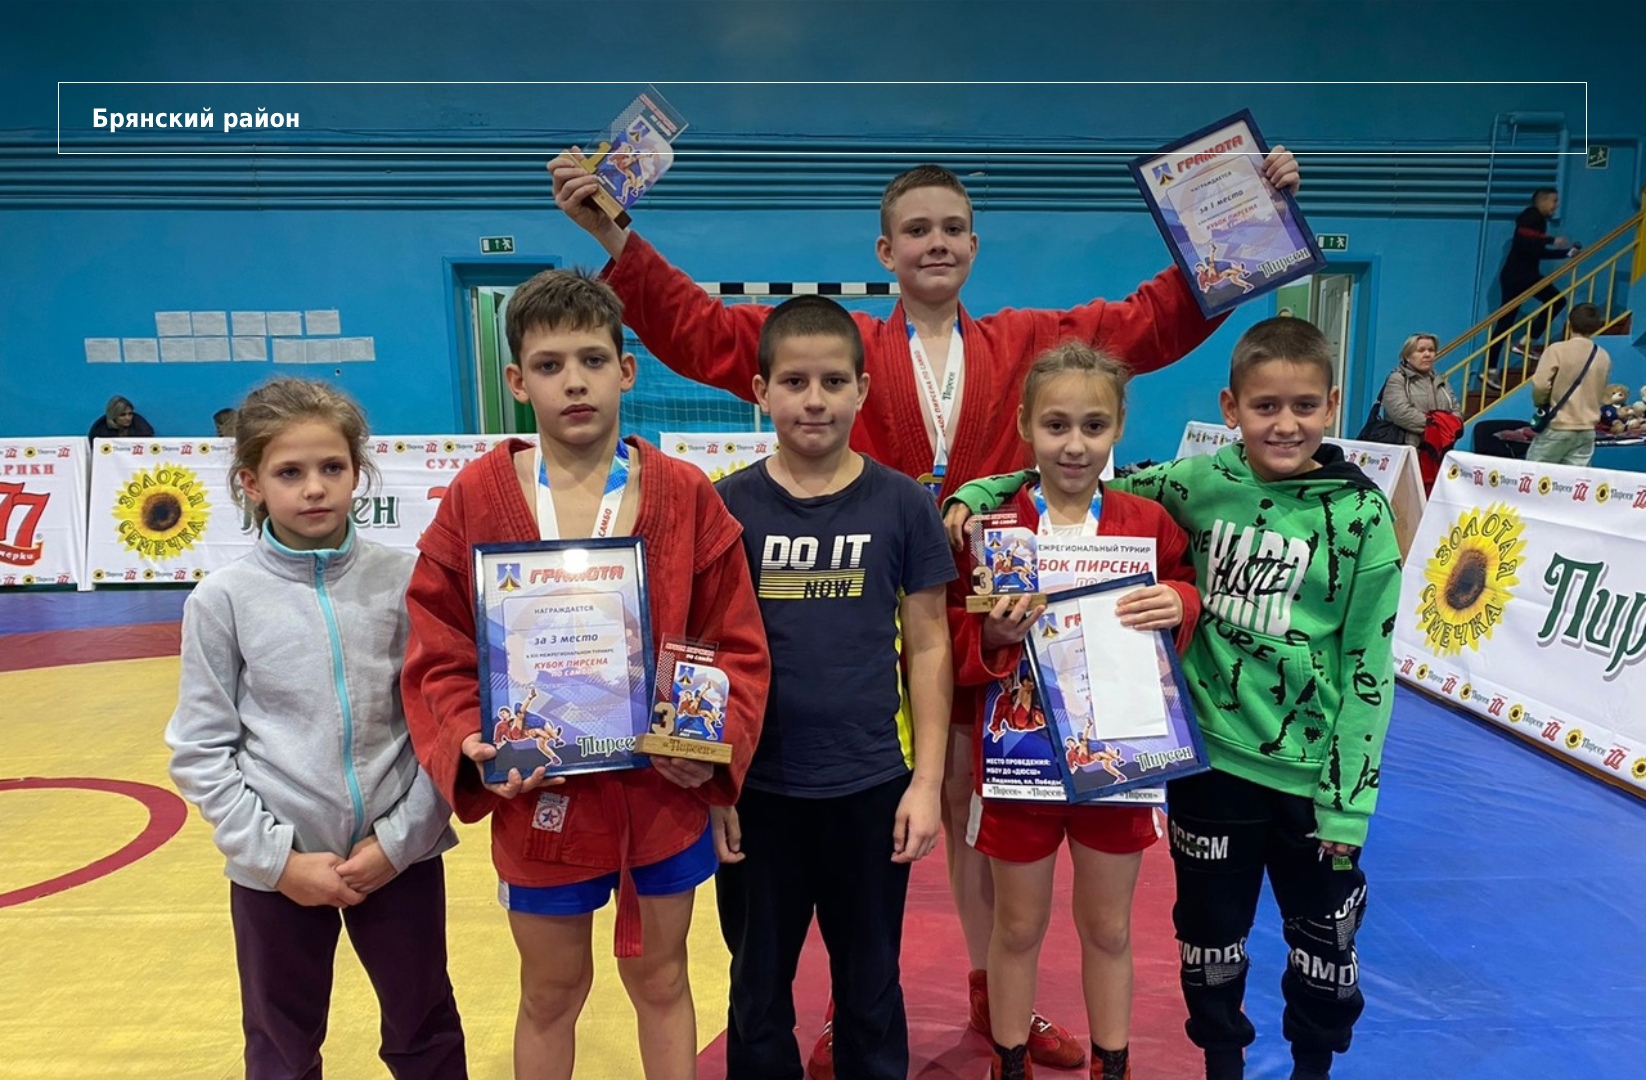 Самбисты Брянского района завоевали четыре медали на Кубке Пирсена